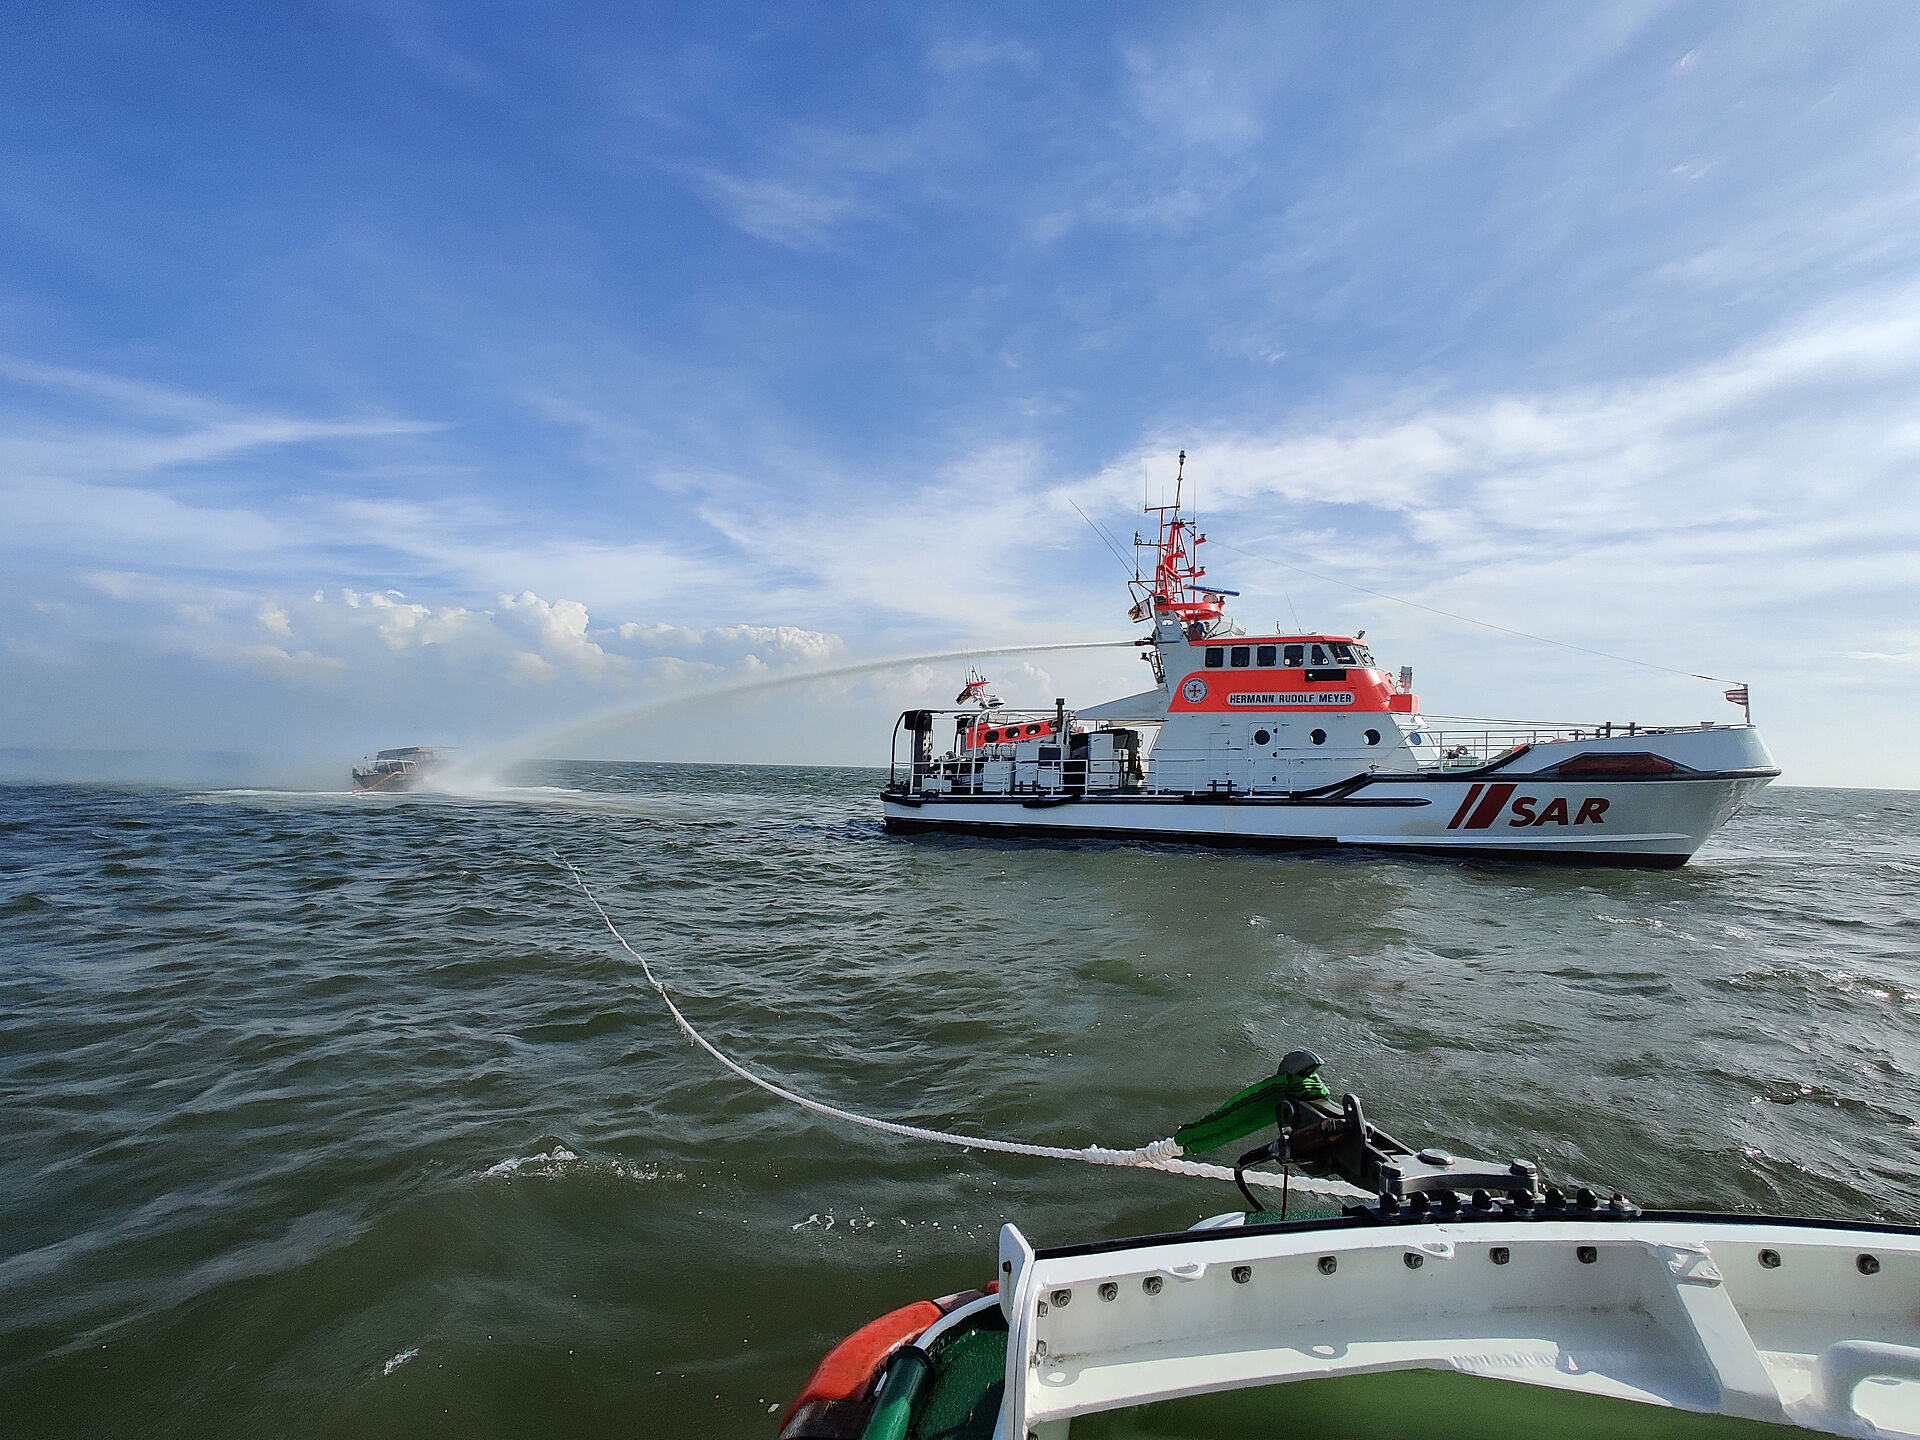 Seenotrettungskreuzer löschen brennende Yacht auf hoher See